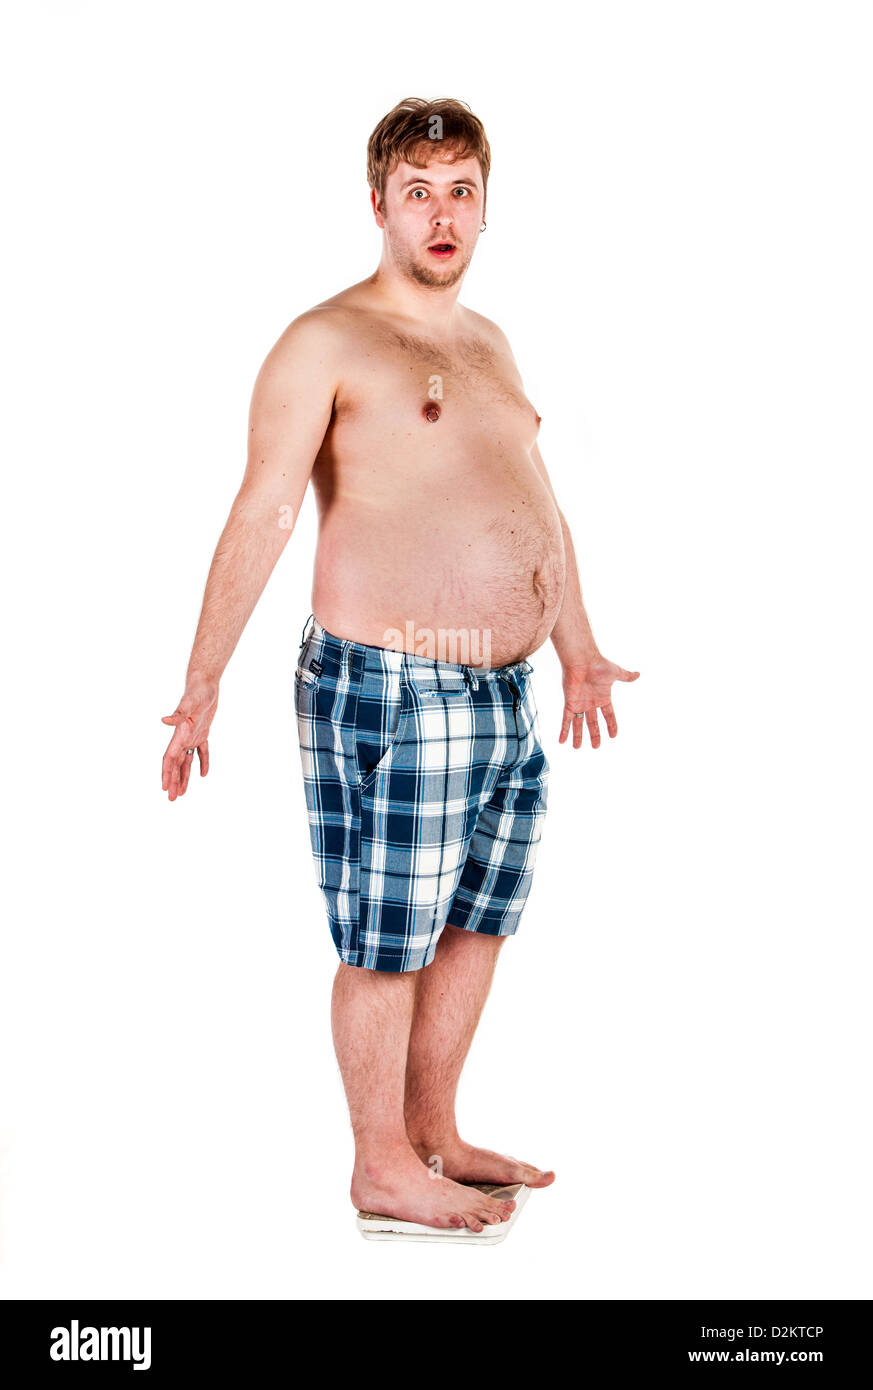 Il sovrappeso, uomo grasso del peso di se stesso sulla bilancia. Foto Stock